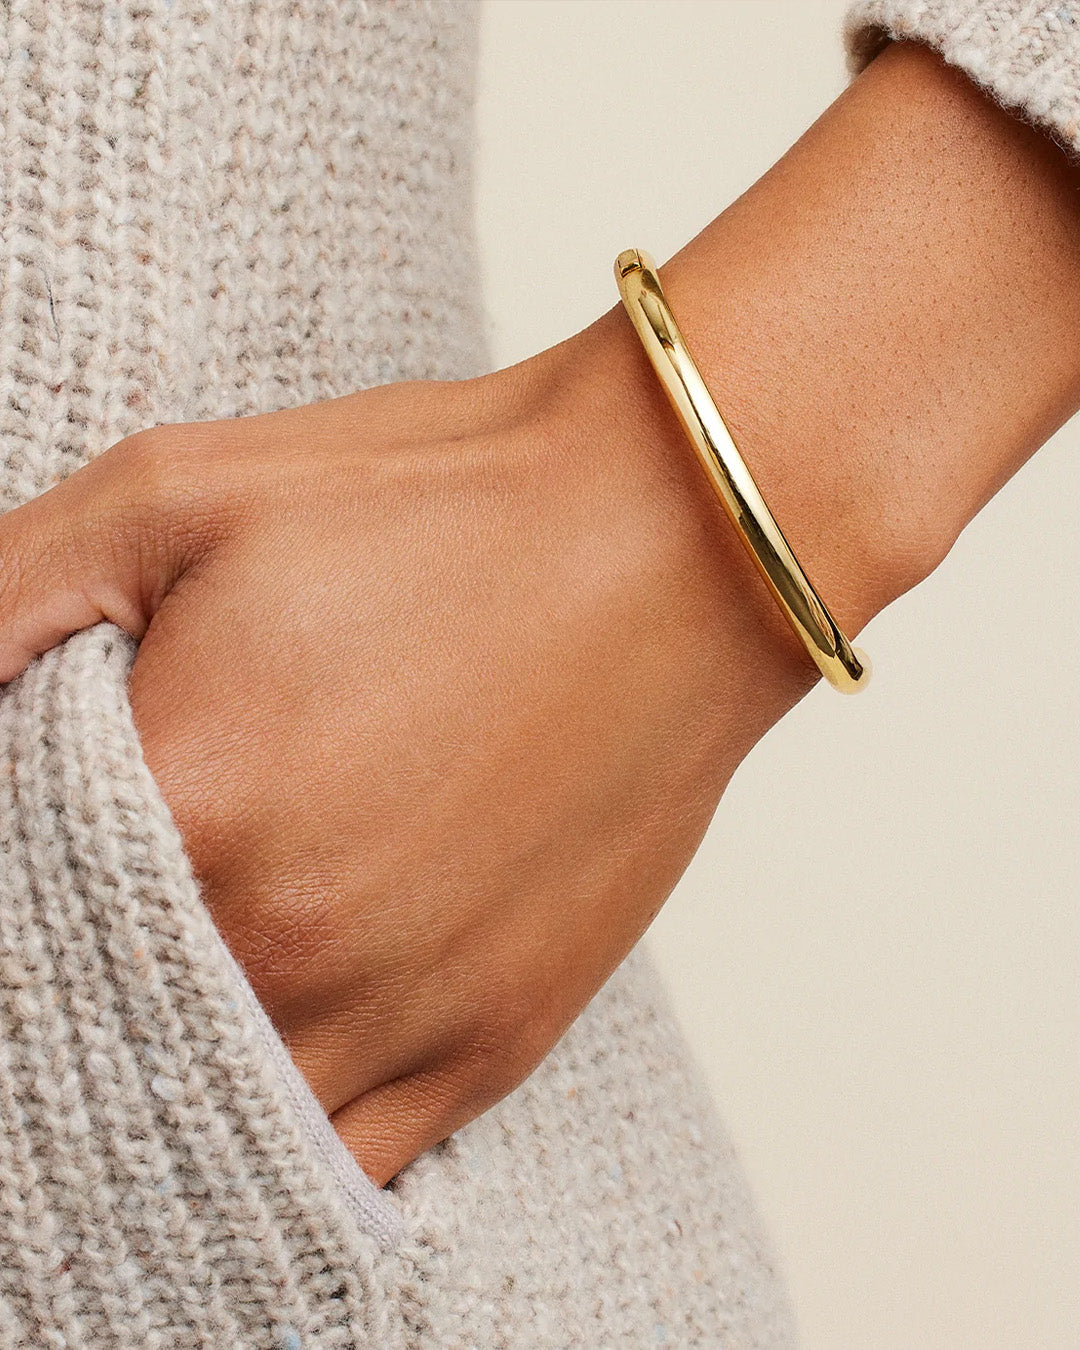 Emerson Hinge Bracelet Gold Plated bracelet || option::Gold Plated